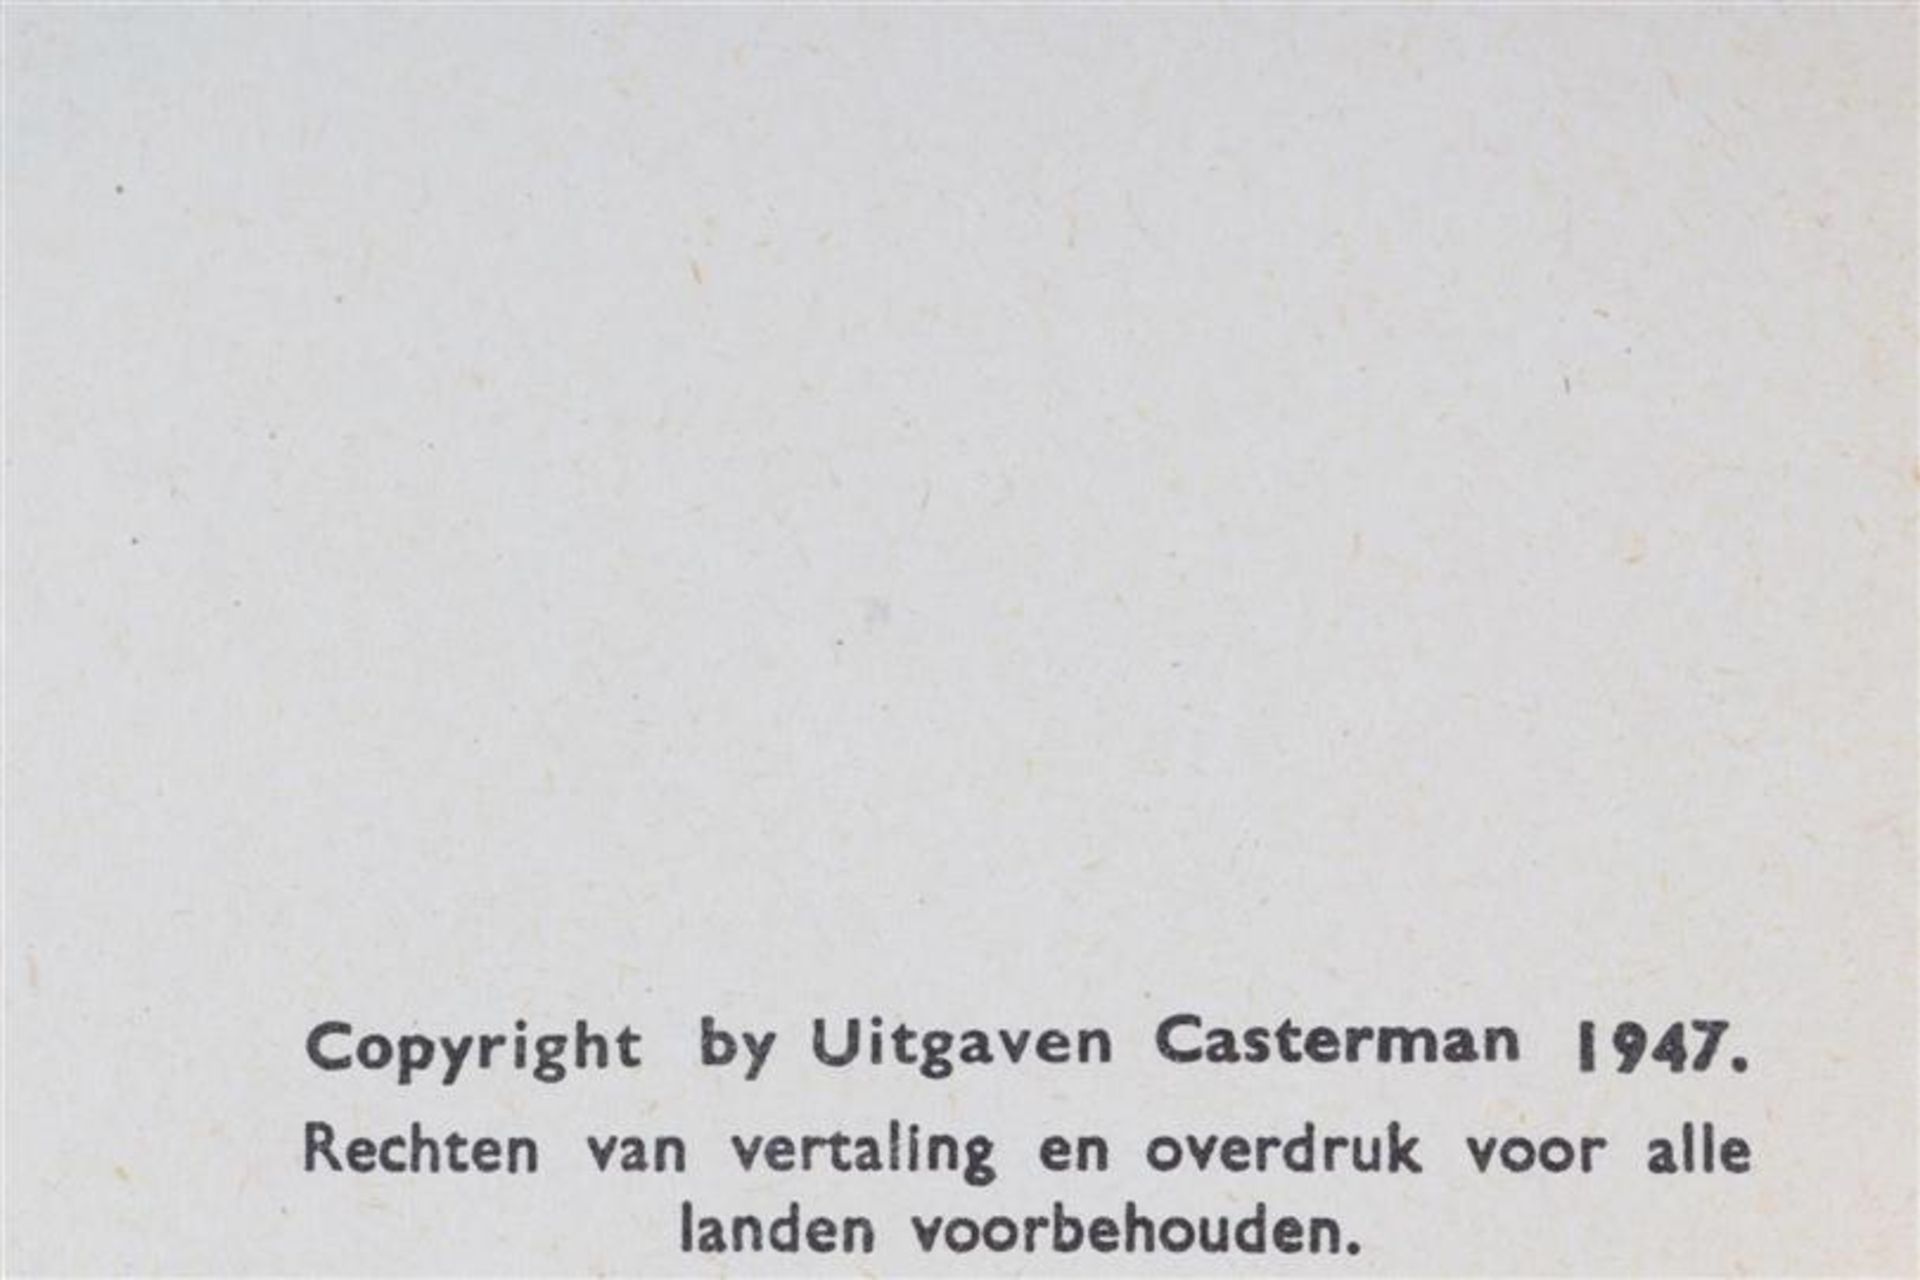 De avonturen van Kuifje, Hergé, uitgeverij Casterman, 7 hardcovers en drie softcovers. - Bild 13 aus 17